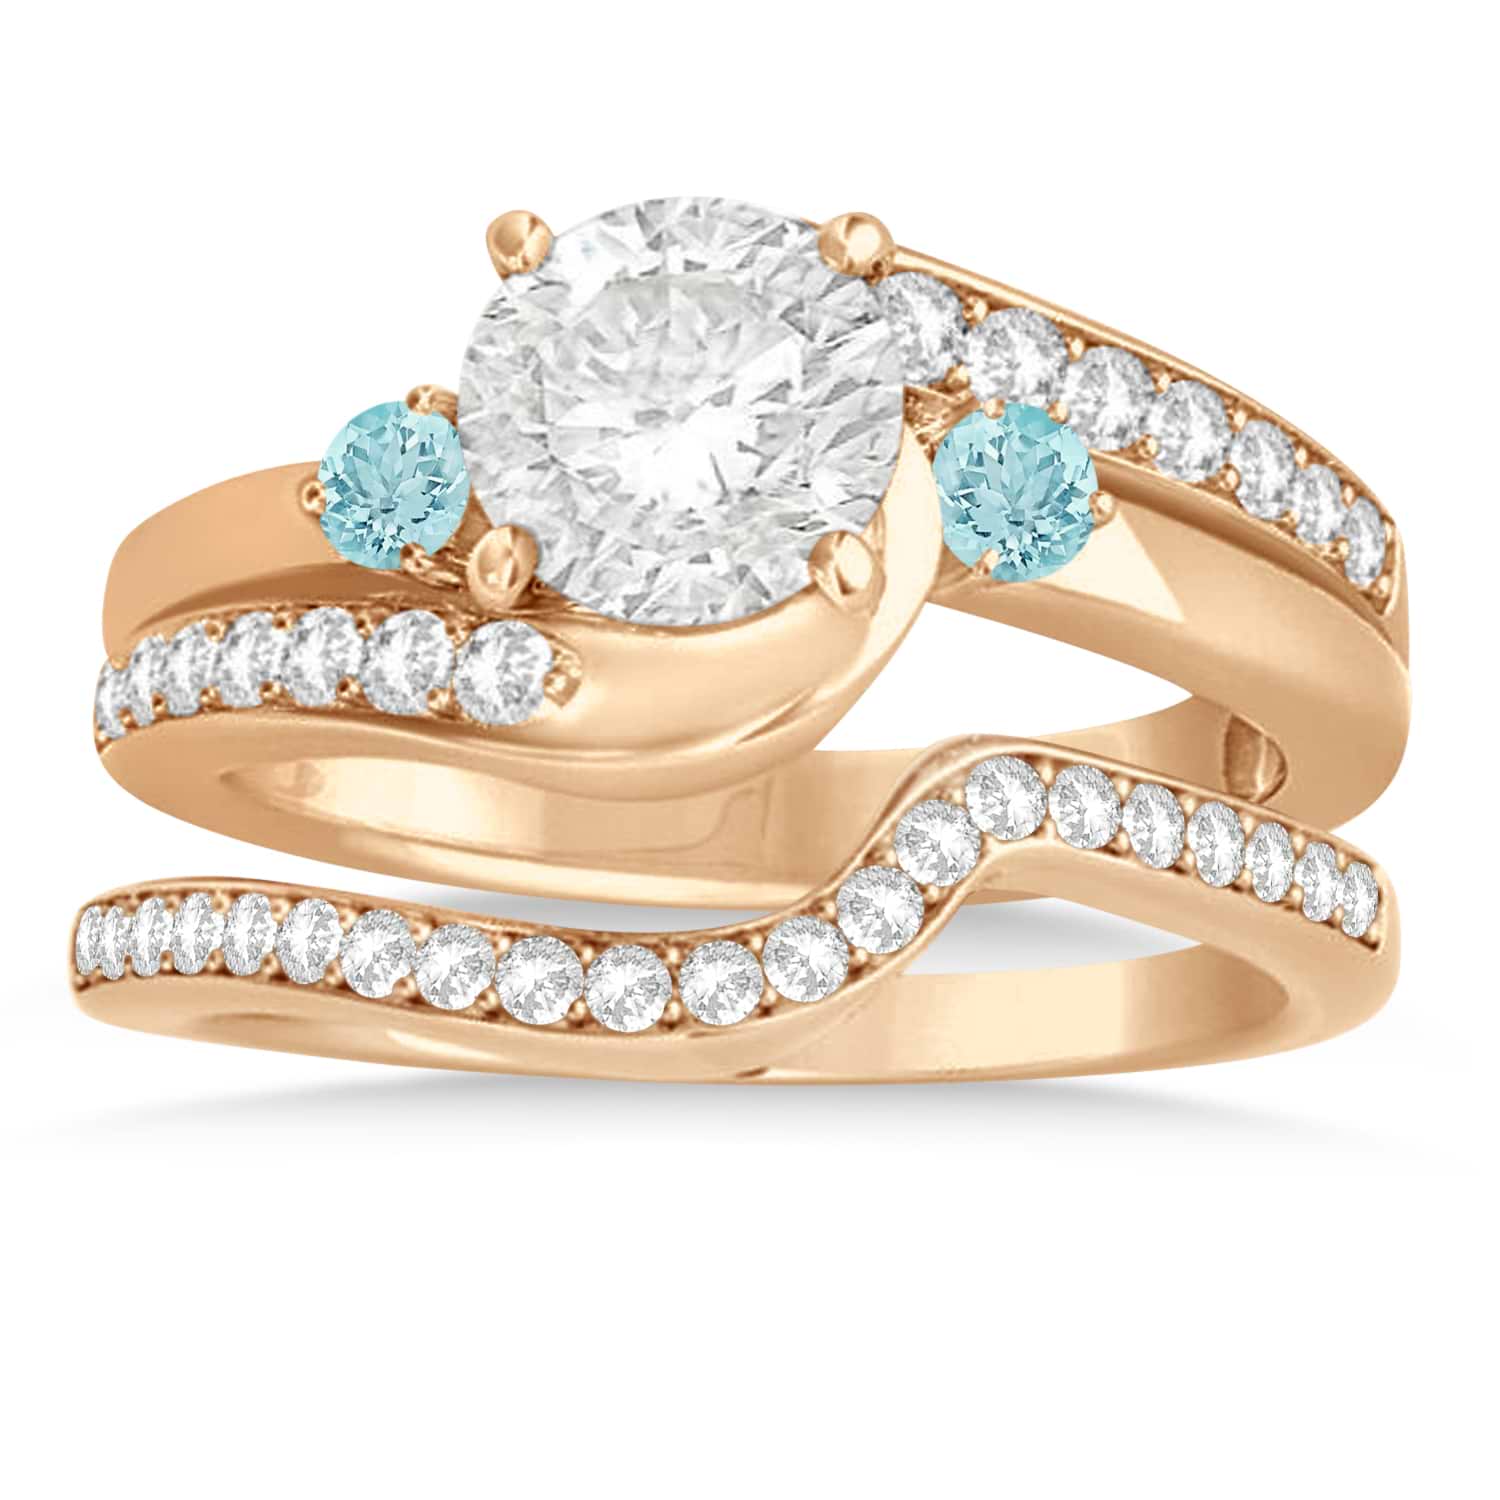 Aquamarine & Diamond Swirl Engagement Ring & Band Bridal Set 18k Rose Gold 0.58ct